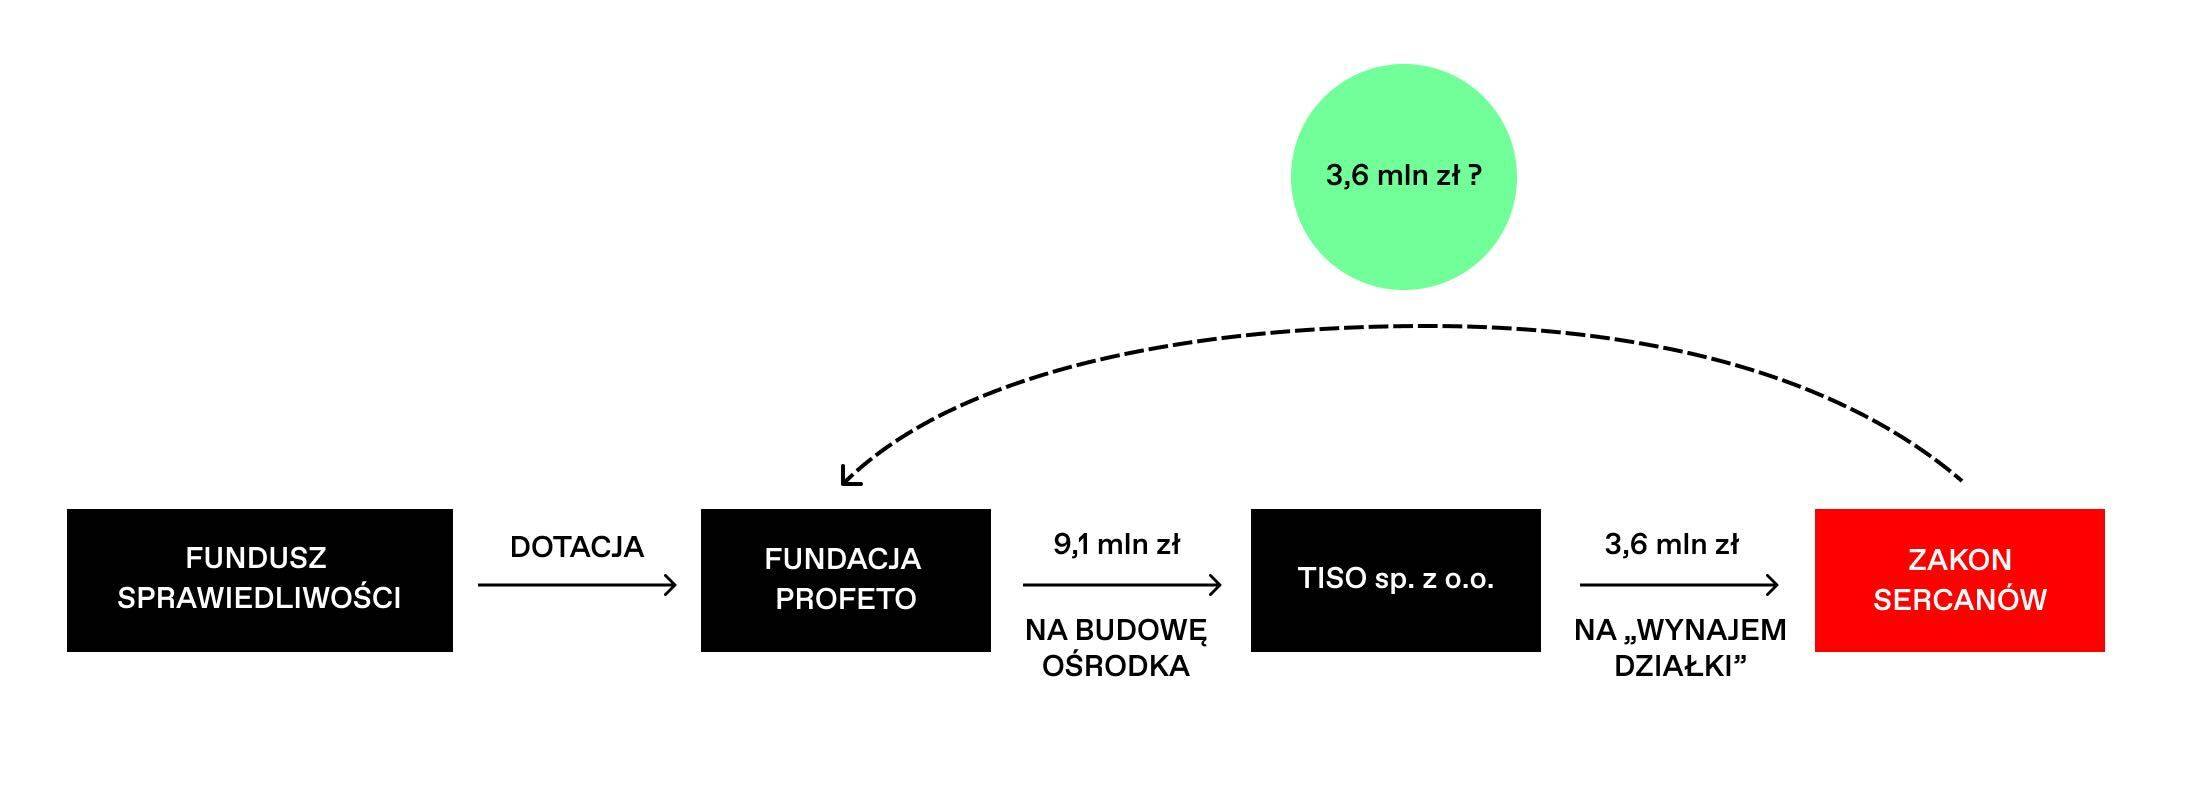 Schemat pokazujący przepływ pieniędzy między Fundacją Profeto a spółką Tiso